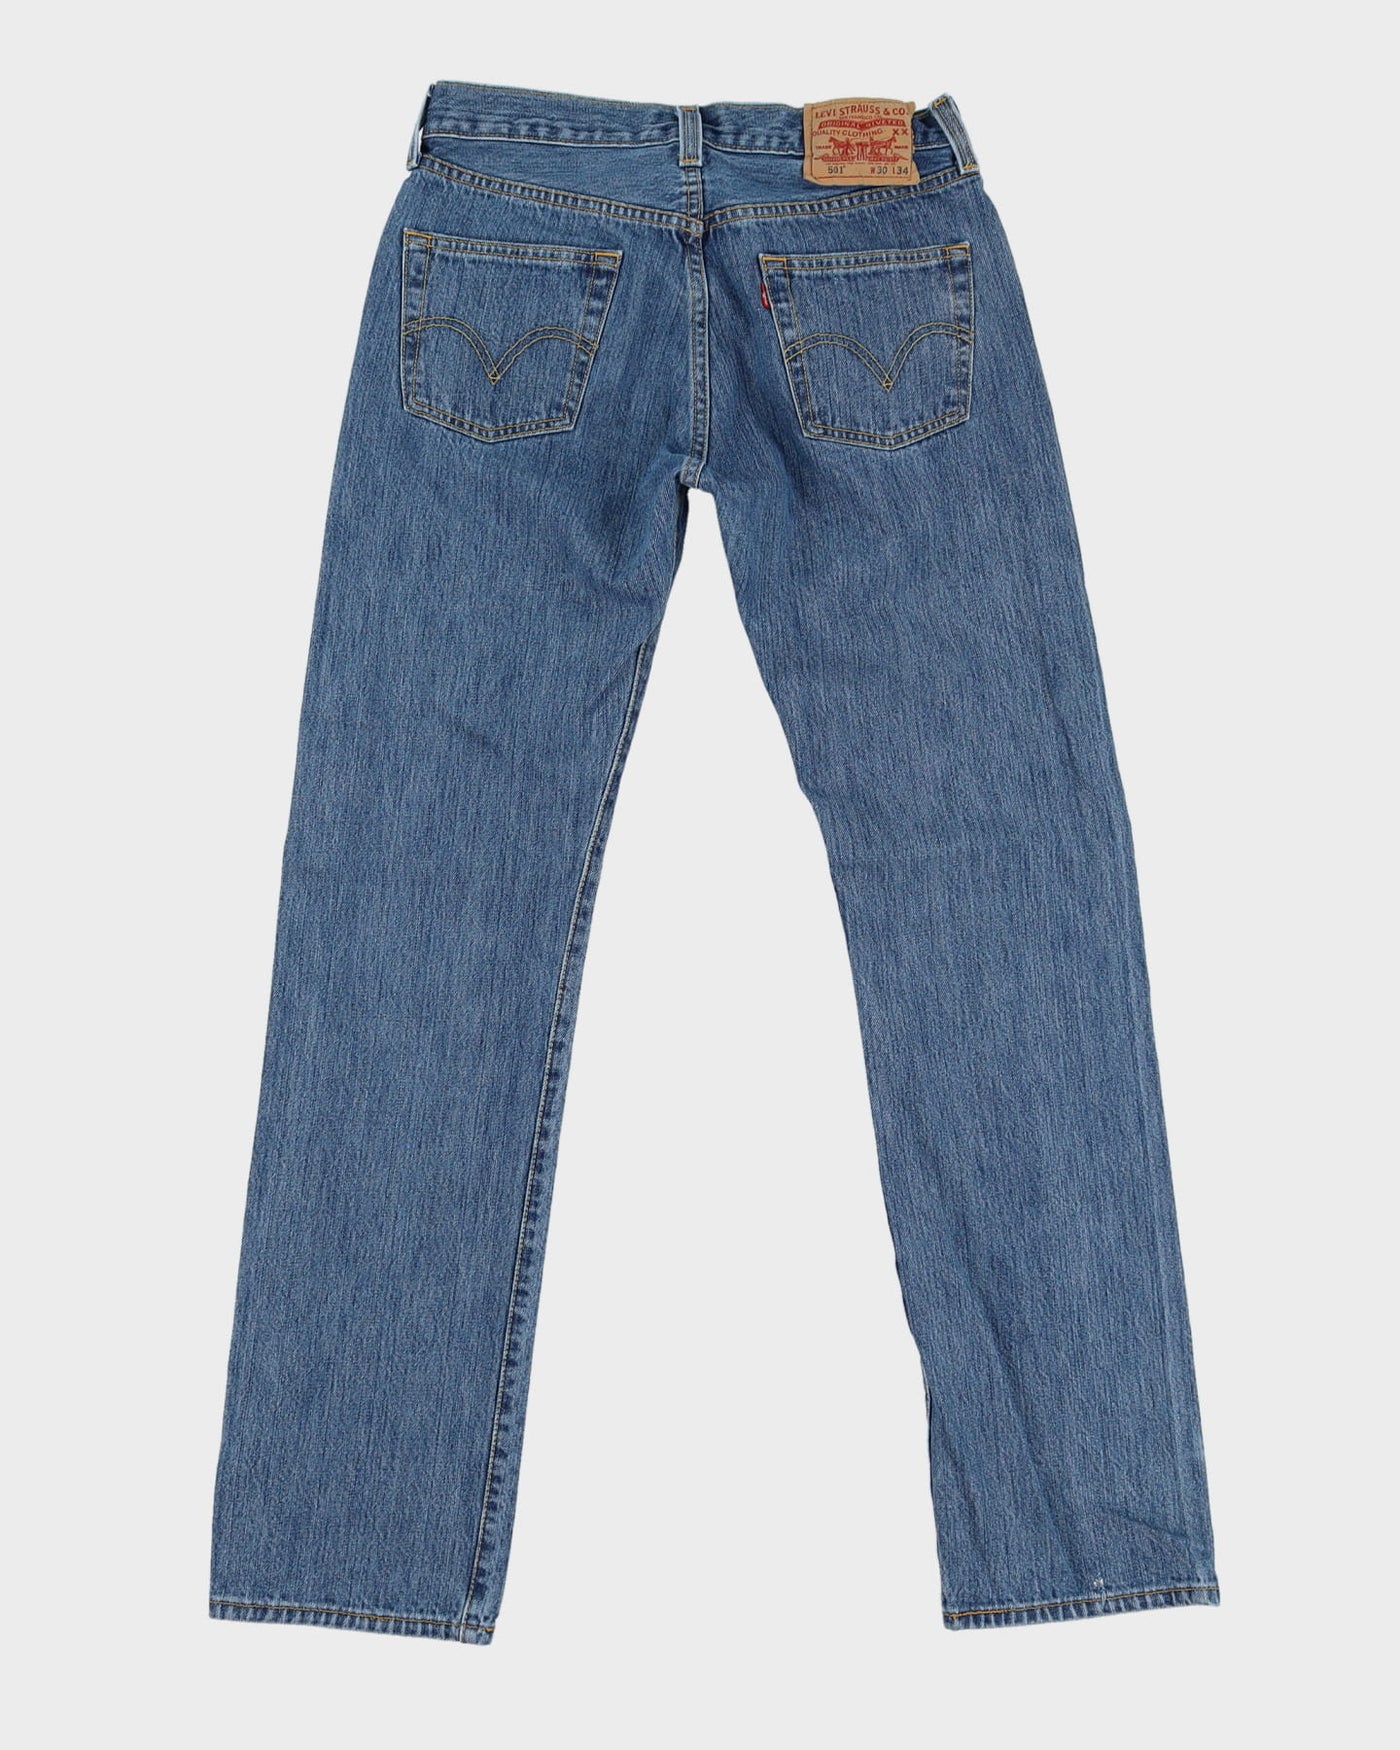 Levi's 501 Blue Jeans - W30 L33